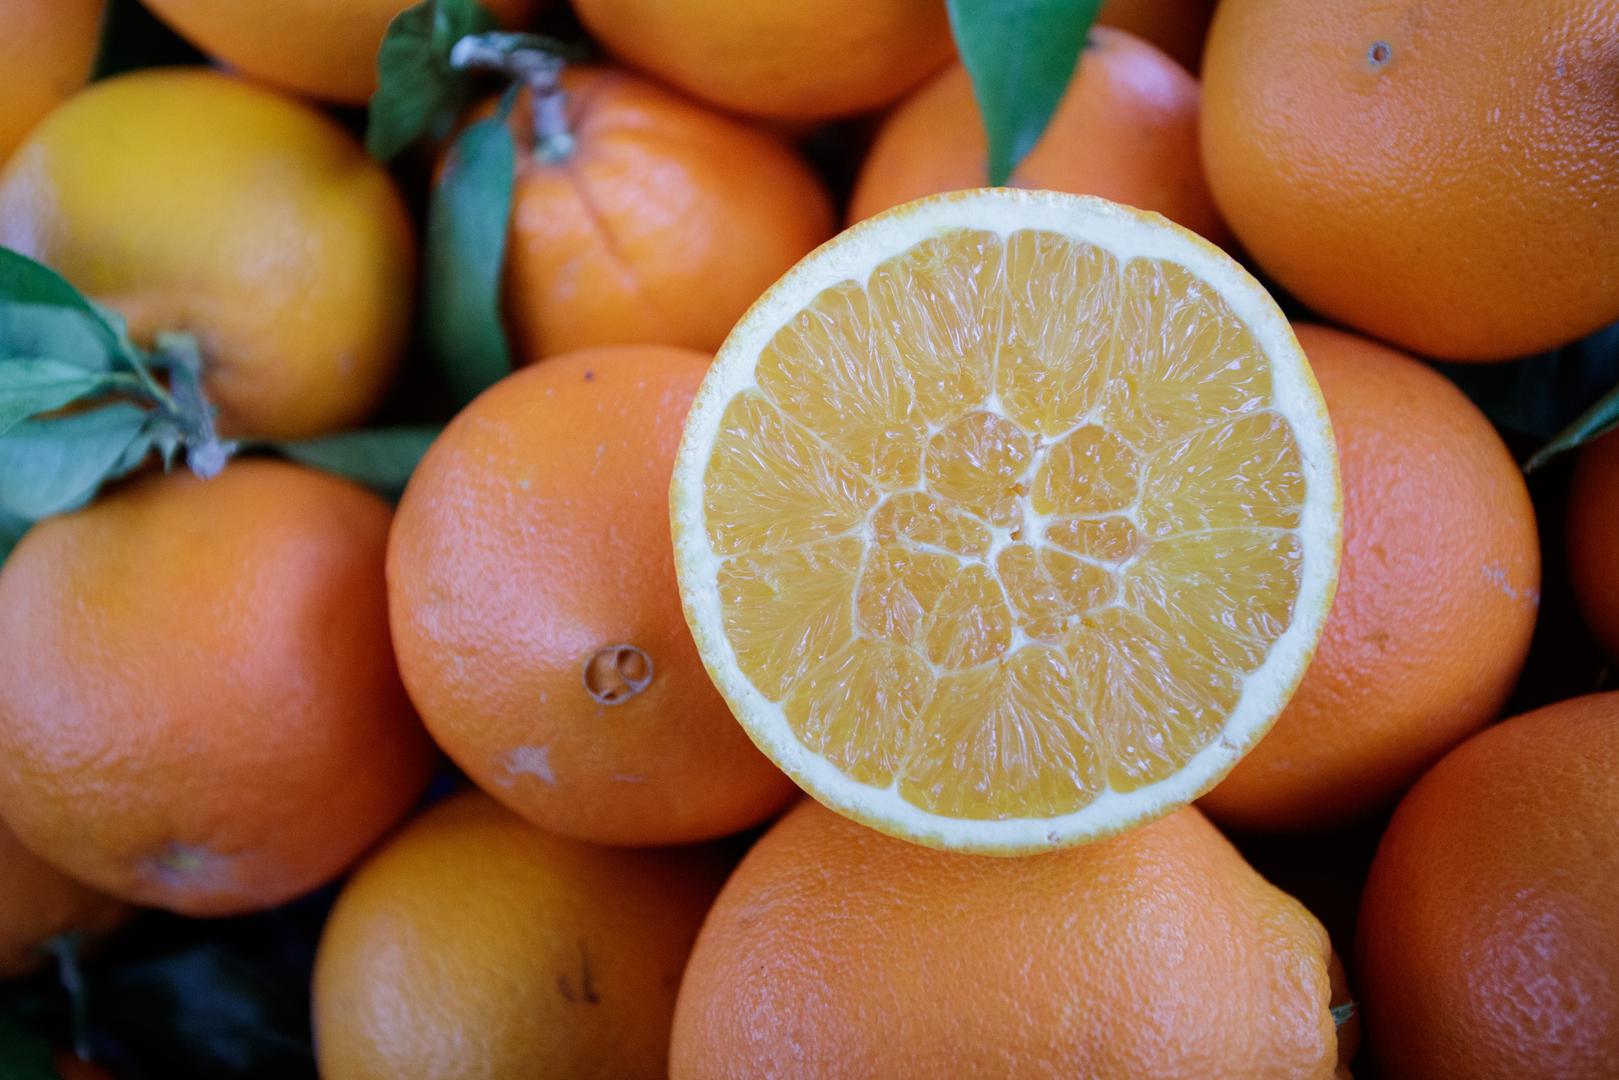 Naranče su najbolji izvor vitamina C – Jagode zapravo sadrže više vitamina C nego naranče. 100 grama jagoda sadrži 57 mg vitamina C, dok ista količina naranči sadrži 42 mg. Samo sedam jagoda potrebno je da zadovoljite dnevnu potrebu za vitaminom C koji doprinosi normalnom funkcioniranju imunološkog sustava.